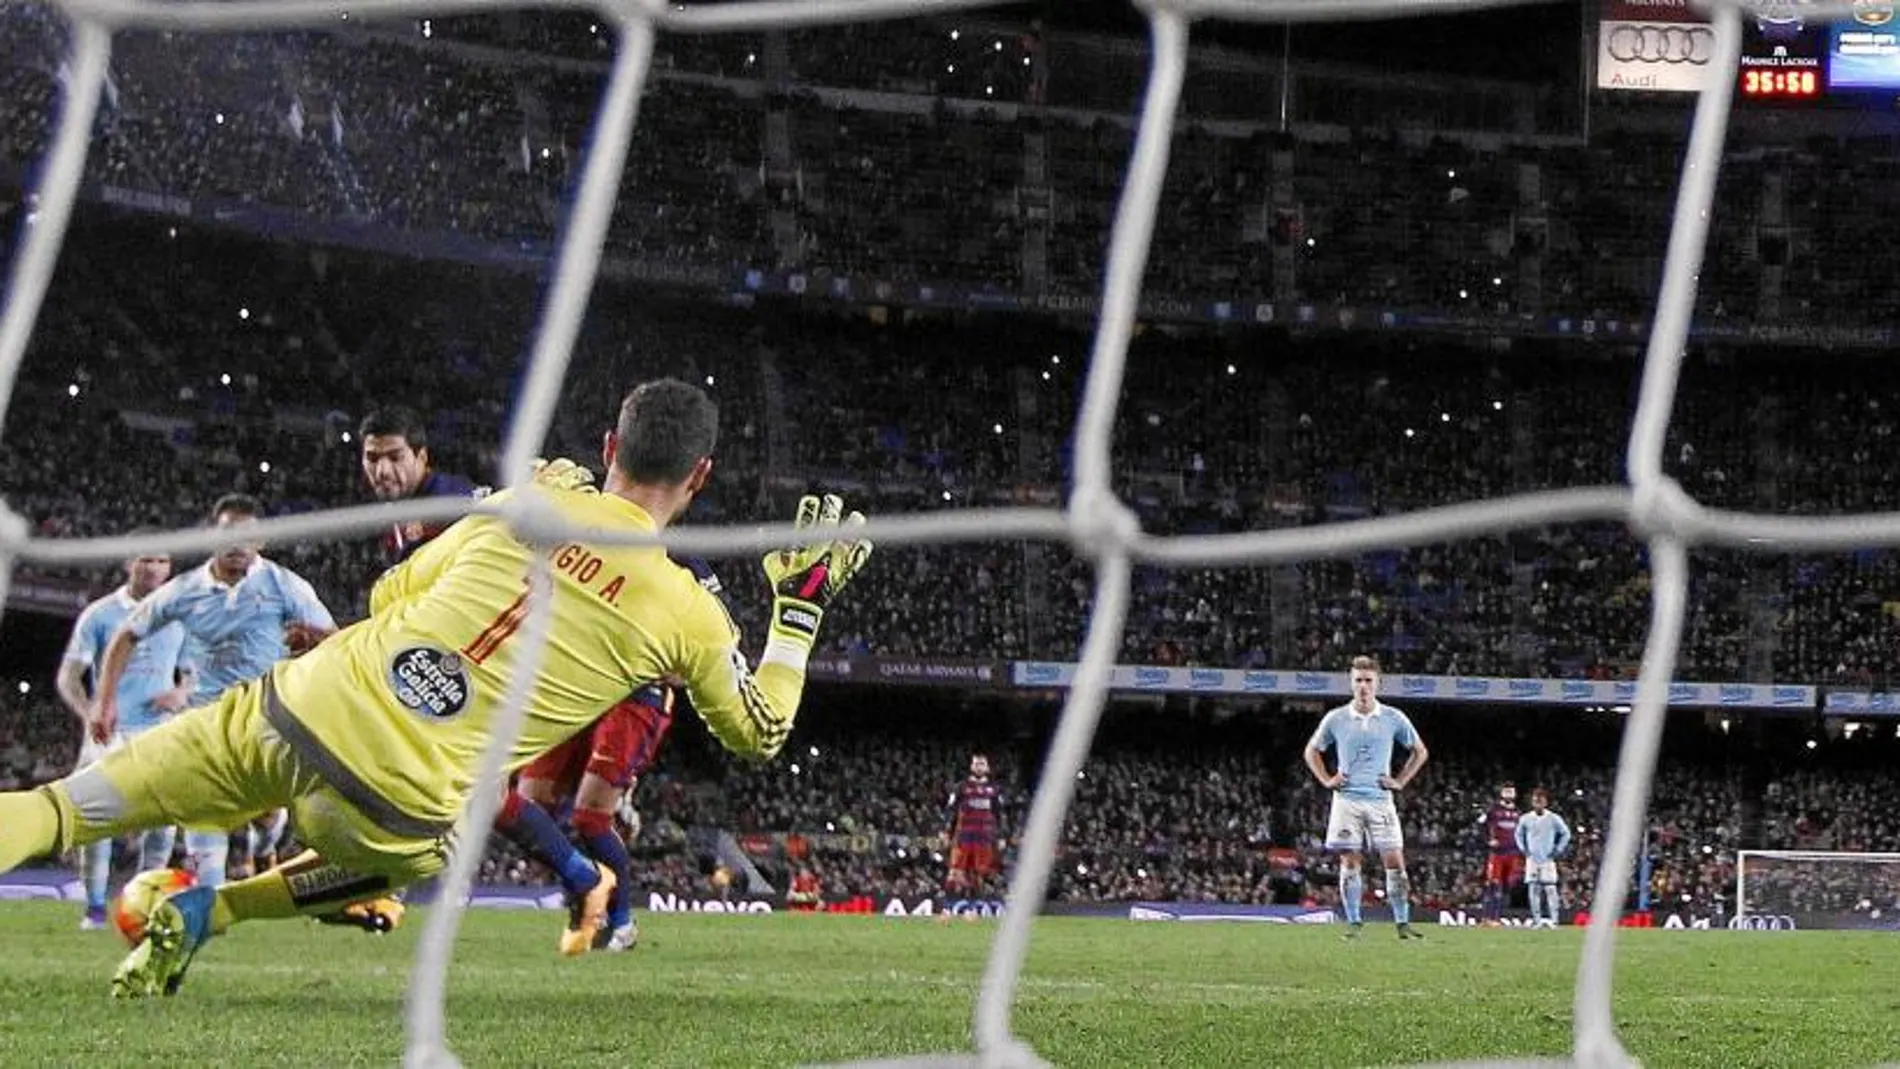 Penalti indirecto. Messi se preparó para lanzar la pena máxima, pero en lugar de tirar a puerta dio un pase para que marcara Suárez